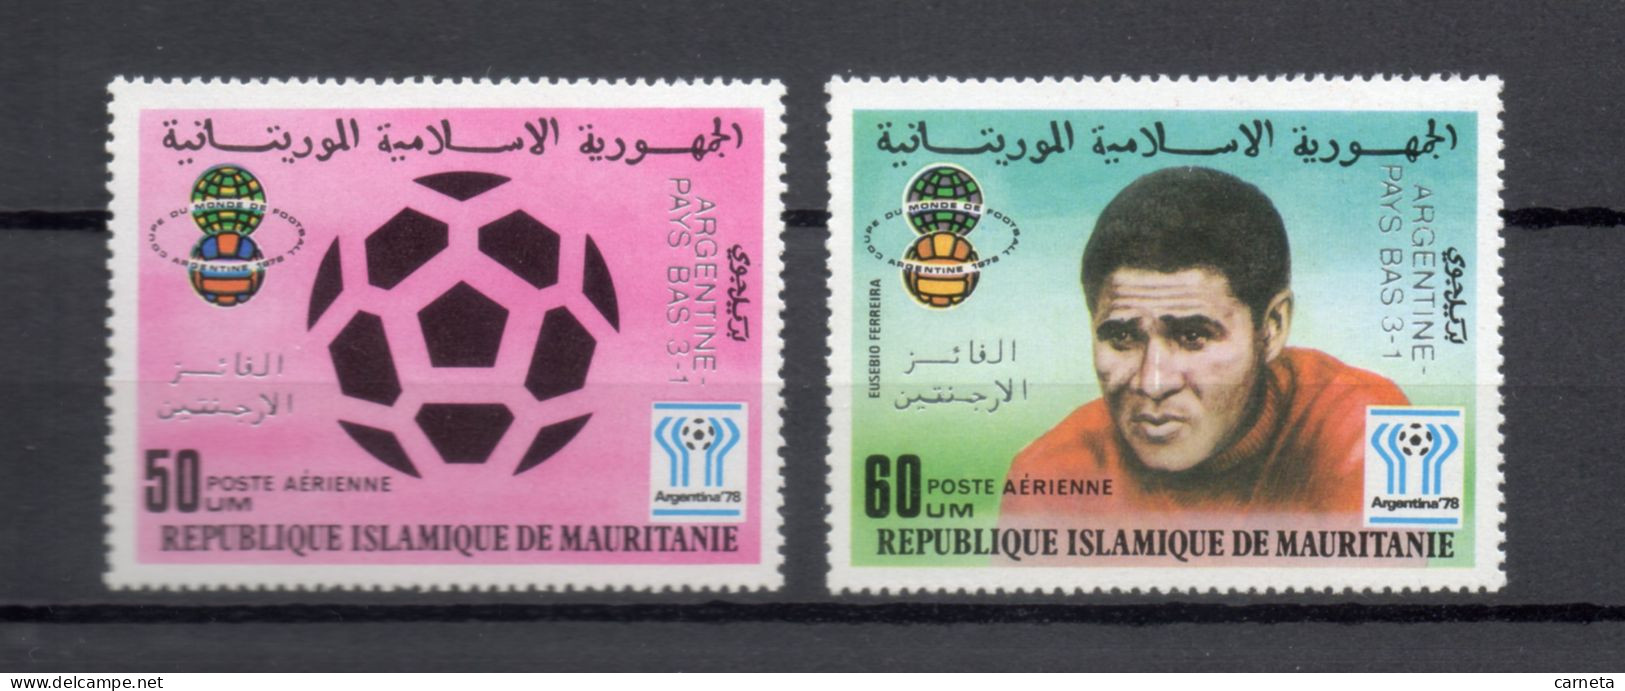 MAURITANIE  PA  N° 188 + 189   NEUFS SANS CHARNIERE   COTE 7.00€    FOOTBALL SPORT SURCHARGE - Mauritanie (1960-...)